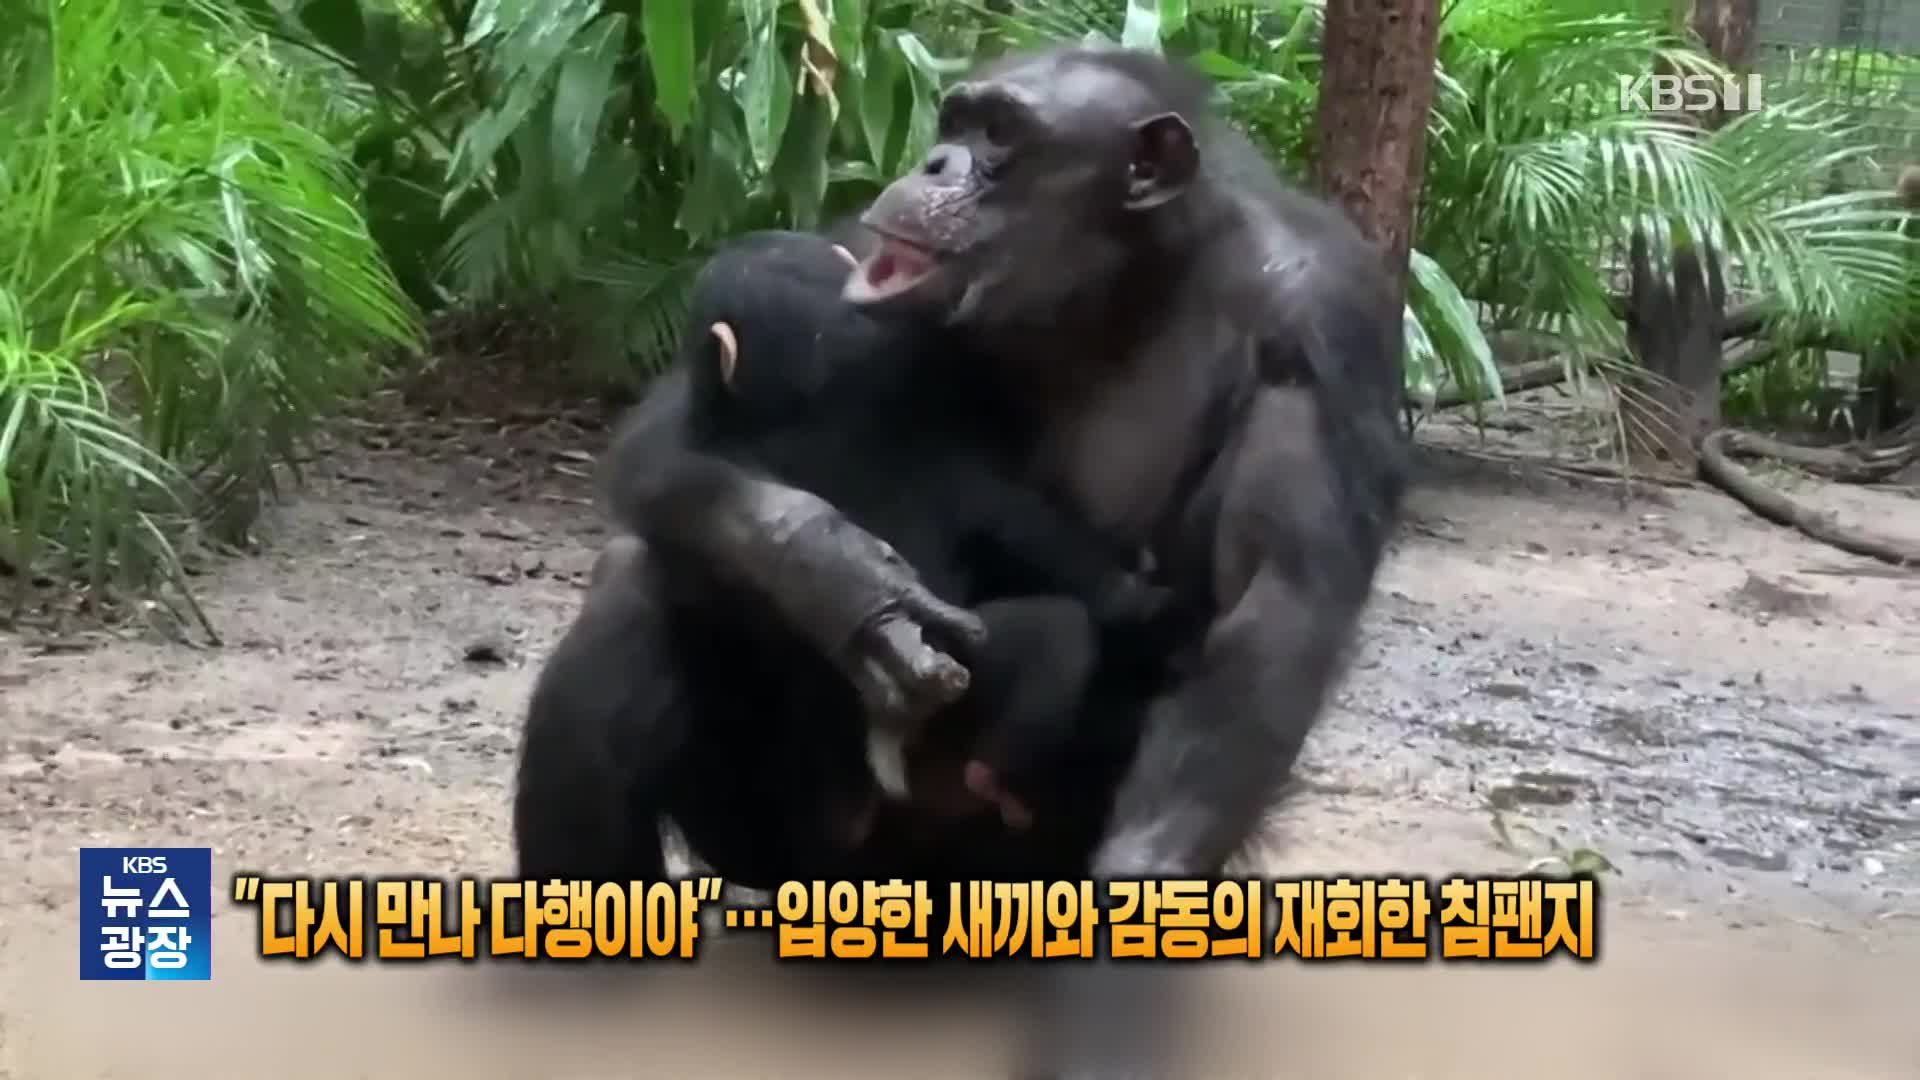 [잇슈 SNS] “다시 만나 다행이야”…입양한 새끼와 감동의 재회한 침팬지